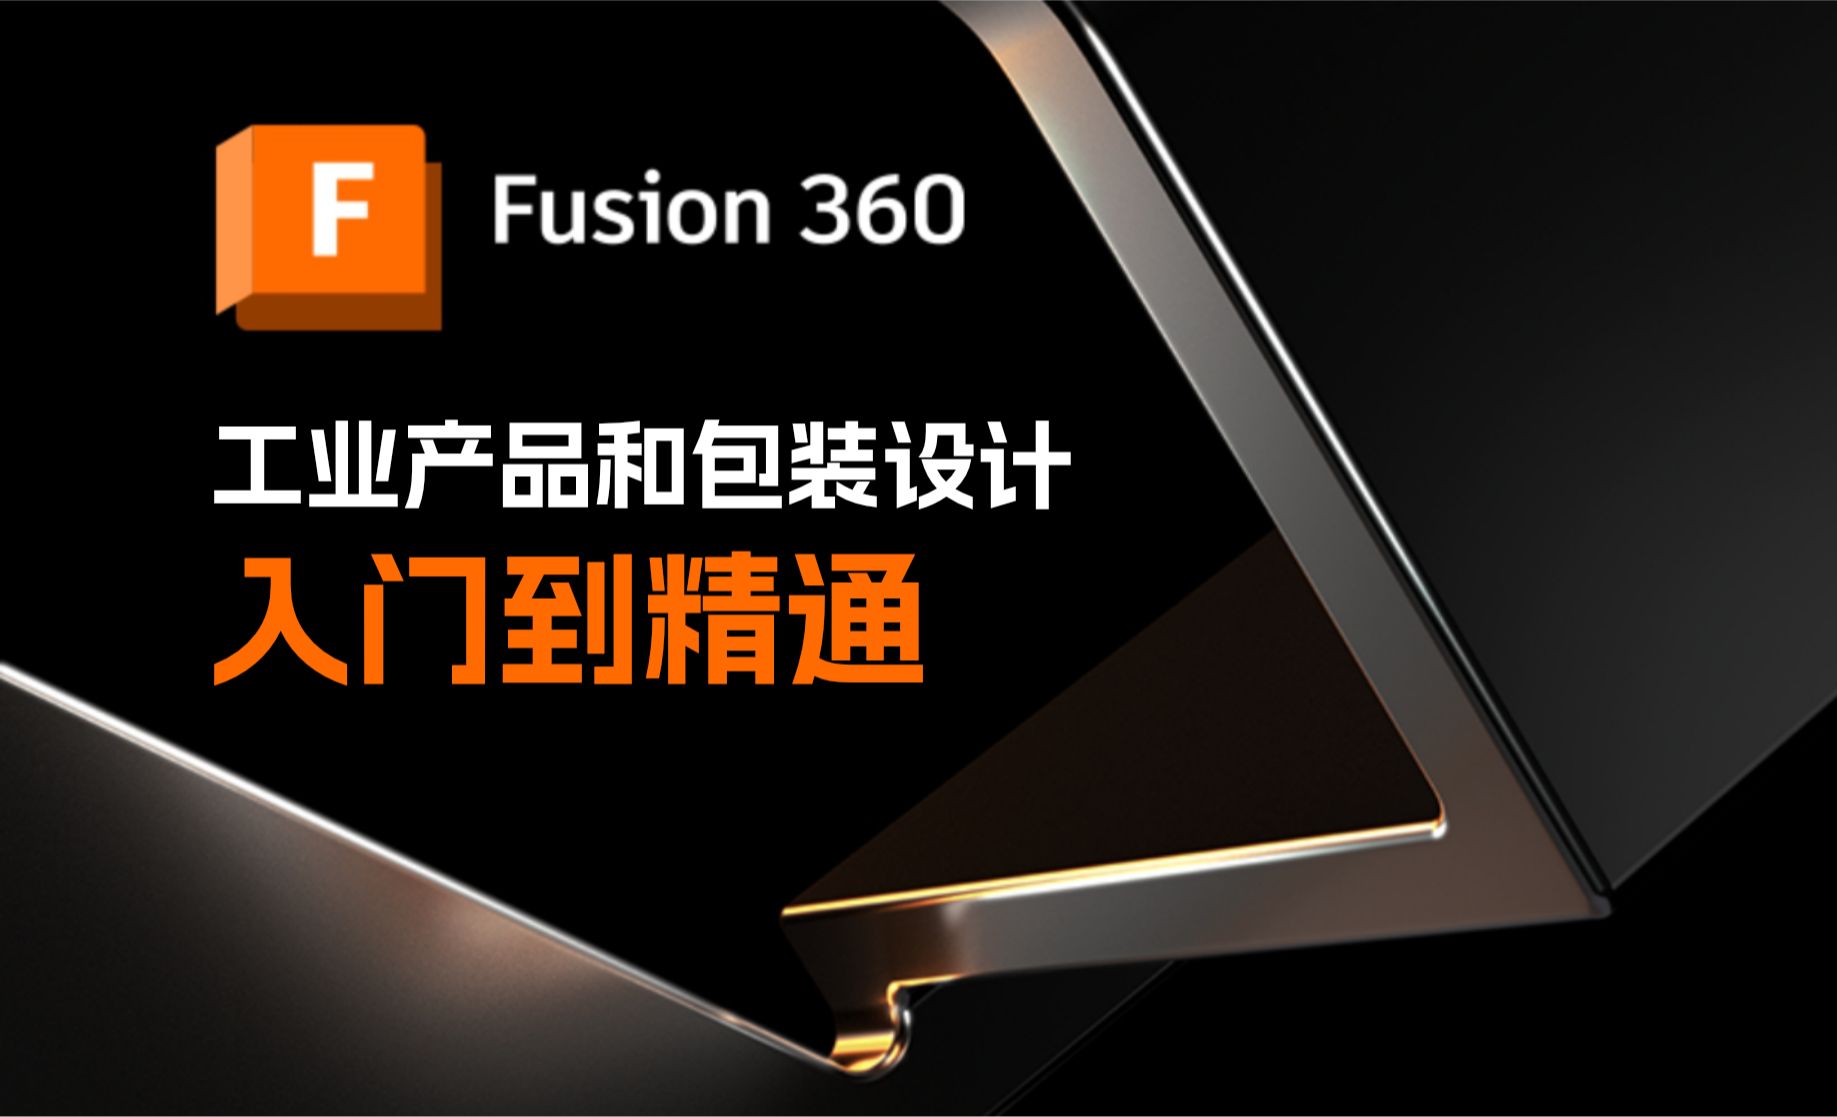 06.Fusion 360 草图约束功能的基本使用方法